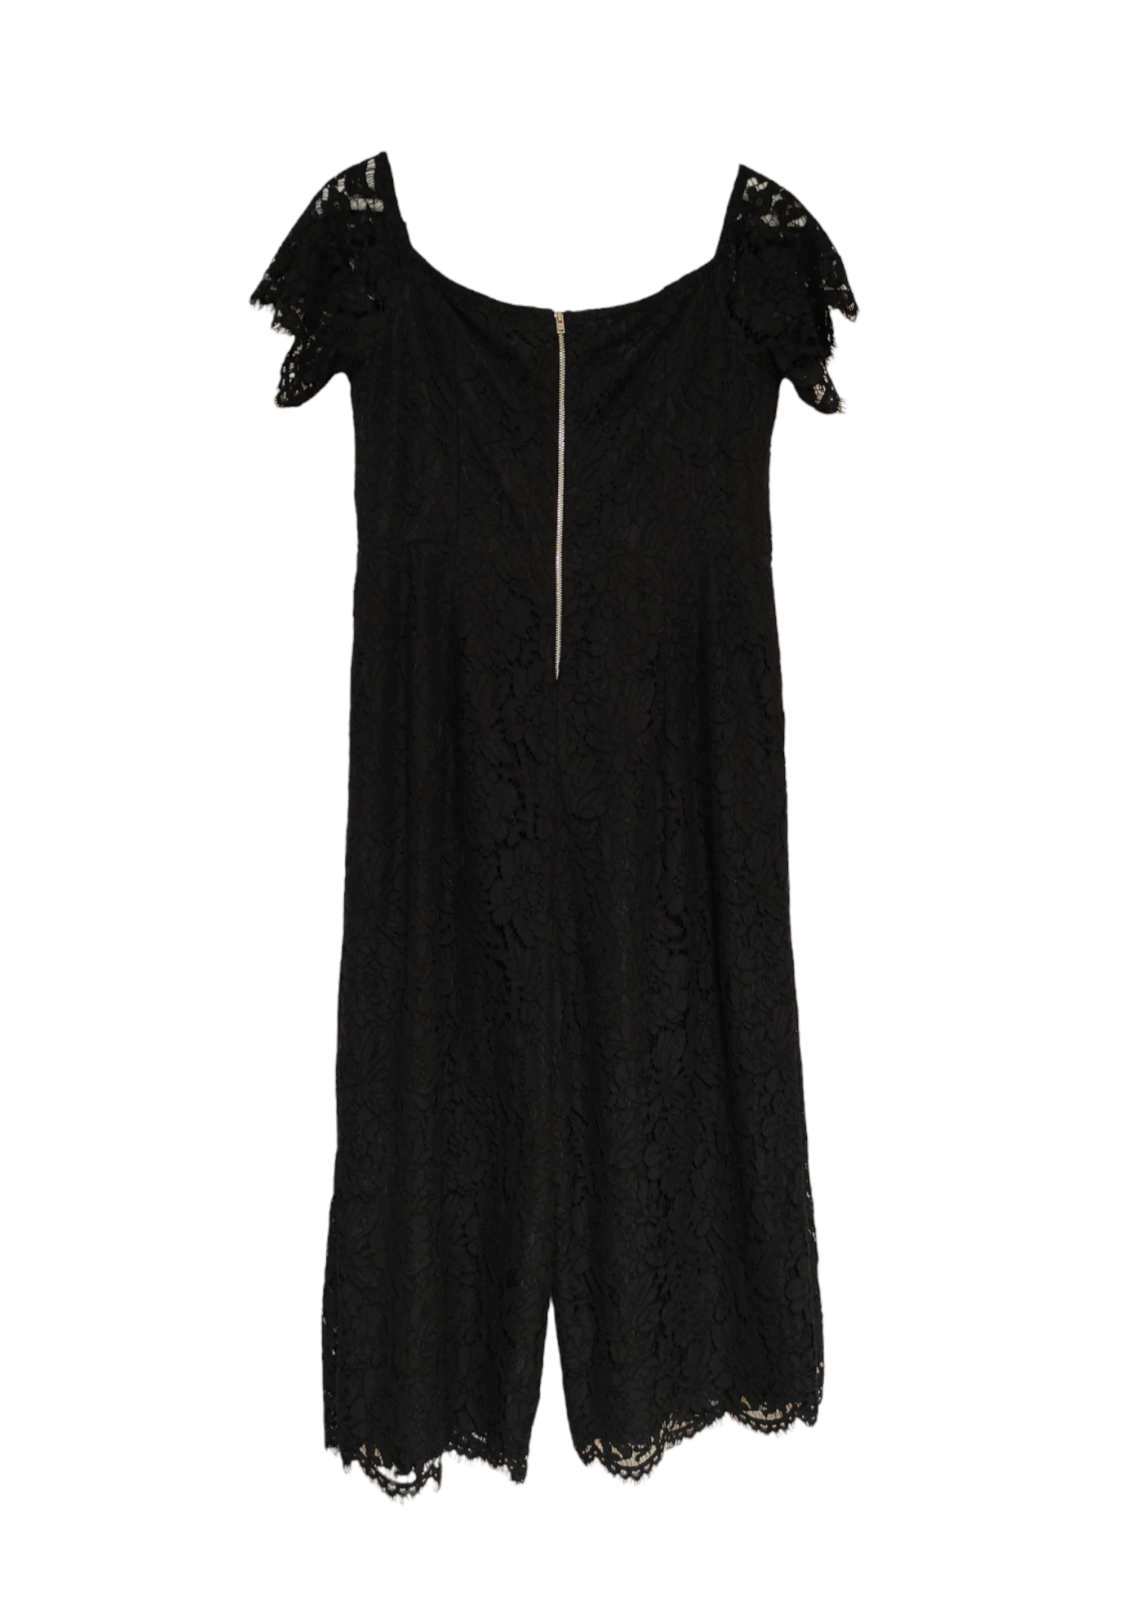 Δαντελωτή Ολόσωμη Φόρμα NEXT Petite σε Μαύρο Χρώμα (S/M)